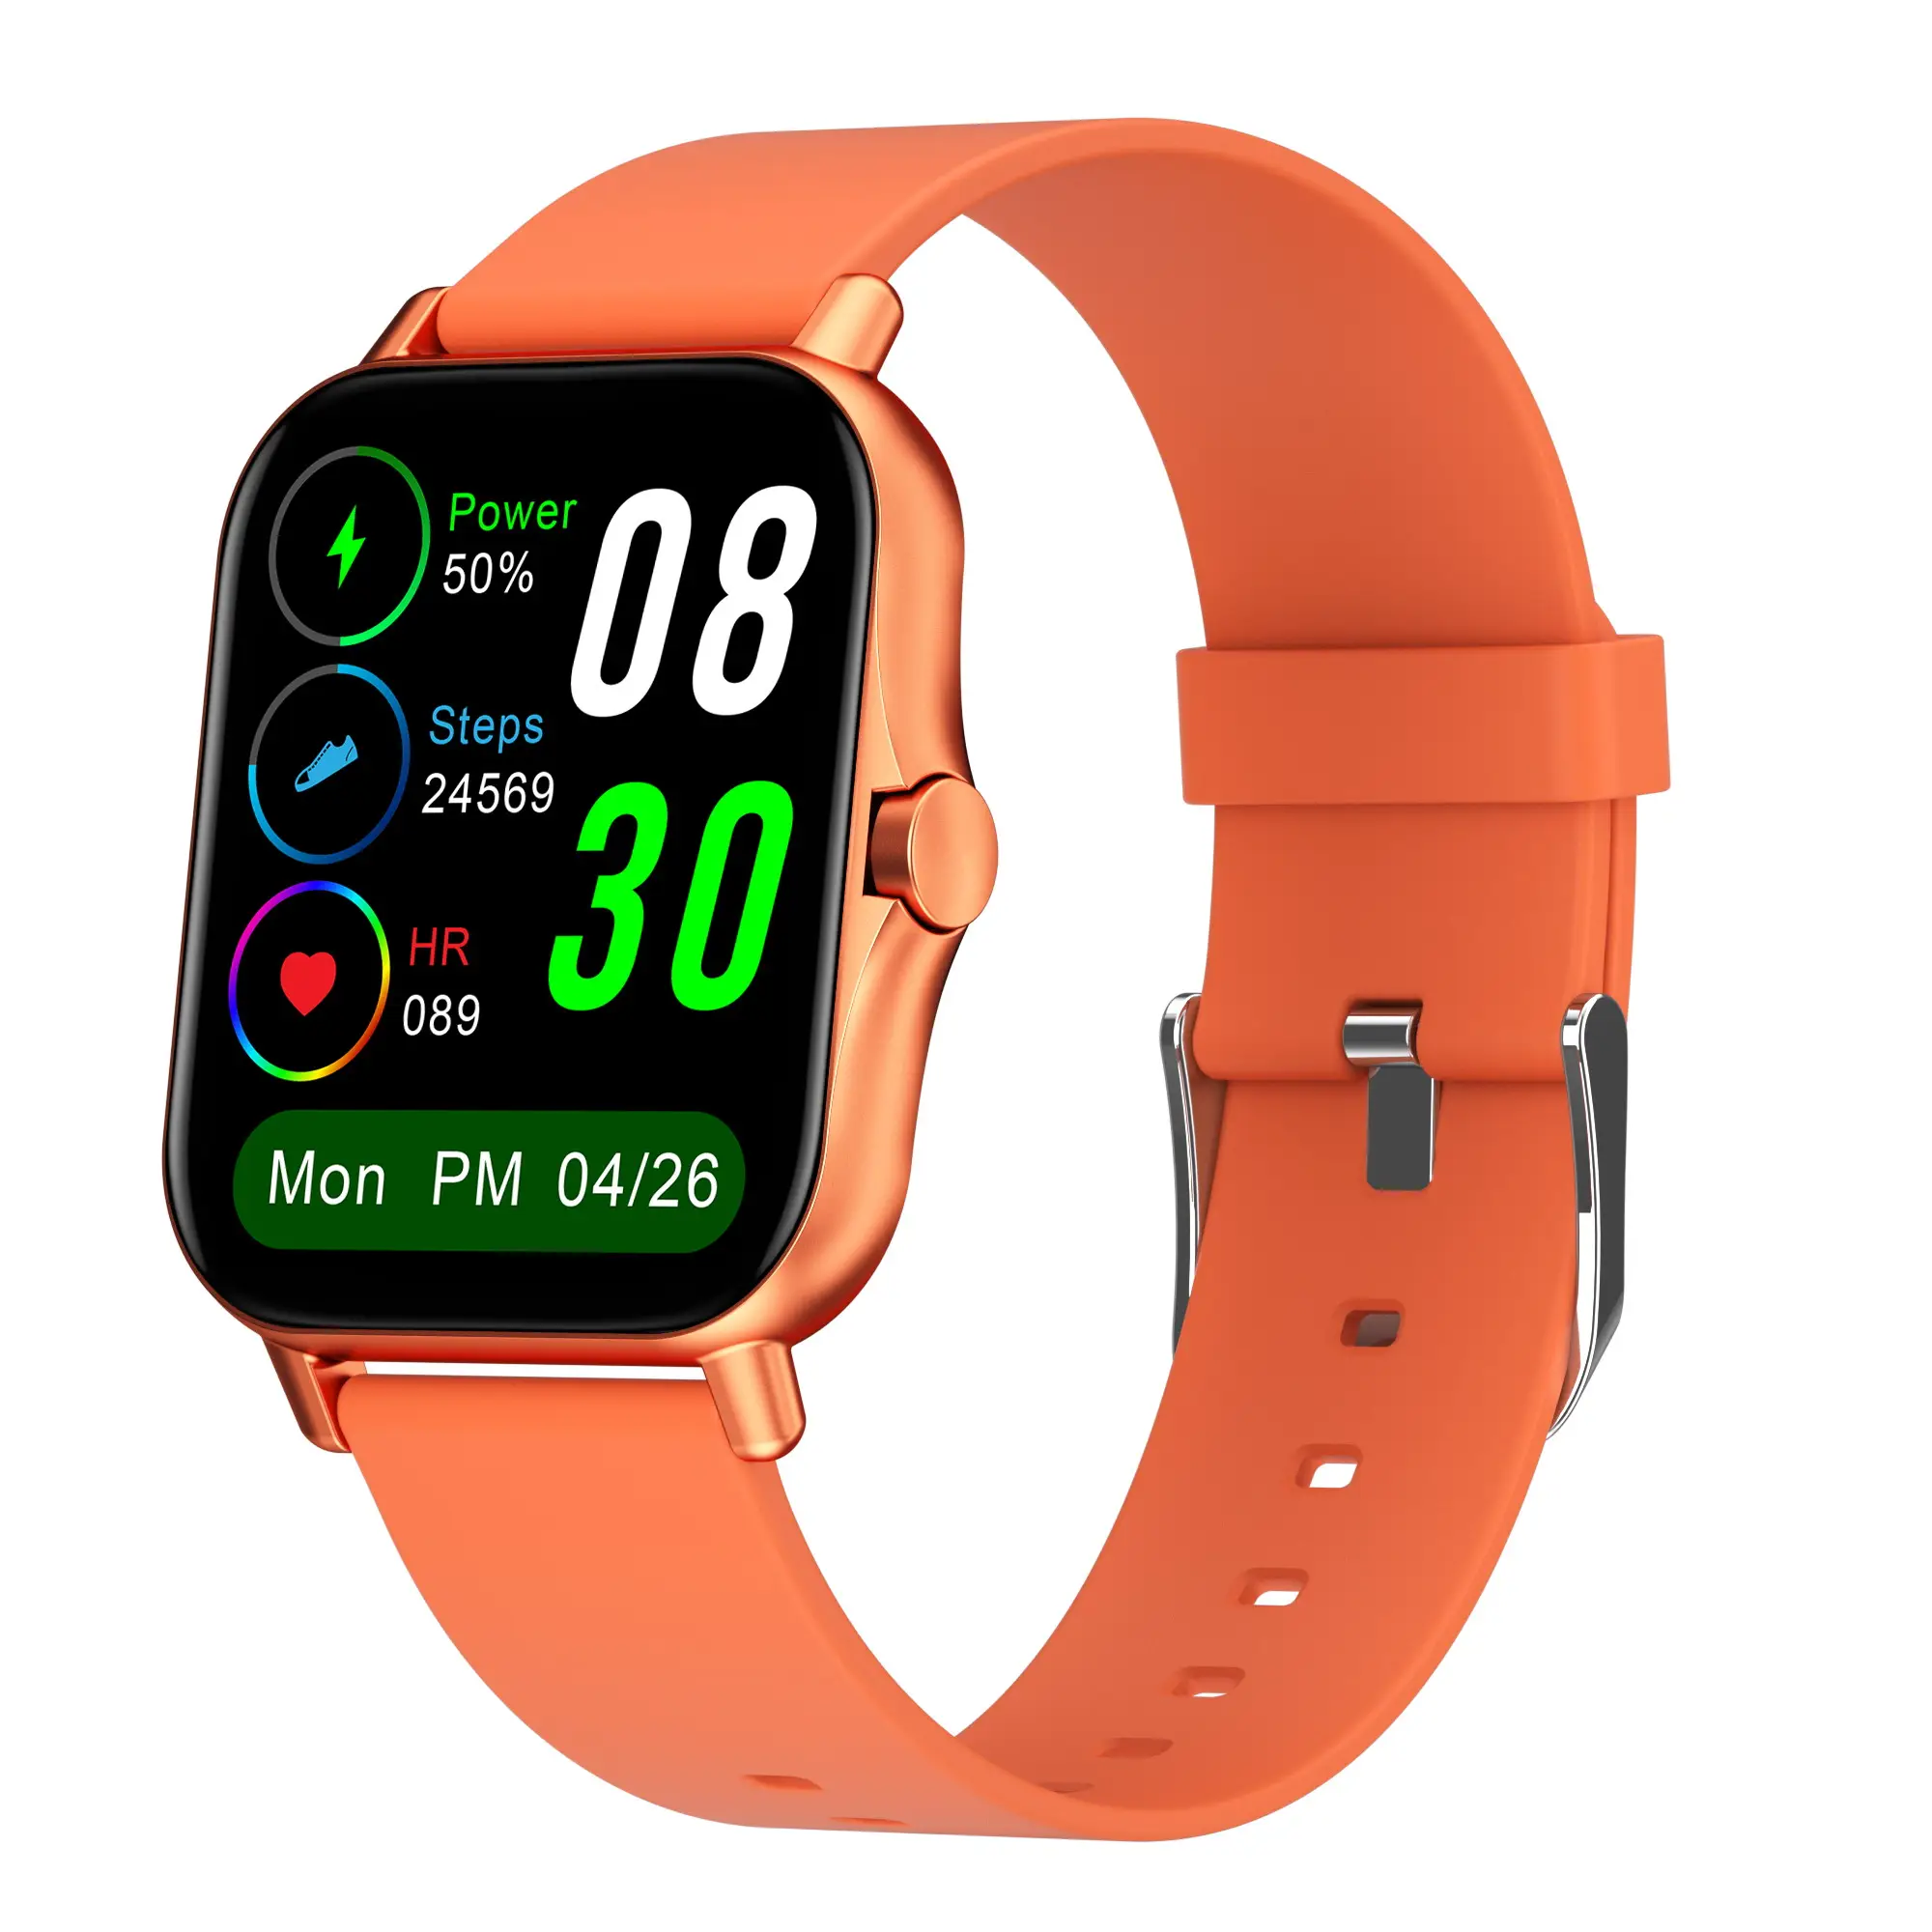 X8 웨어러블 gps 추적 장치 고품질 안드로이드 smartwatch 남성 패션 손목 smartwatch 게임 reloj